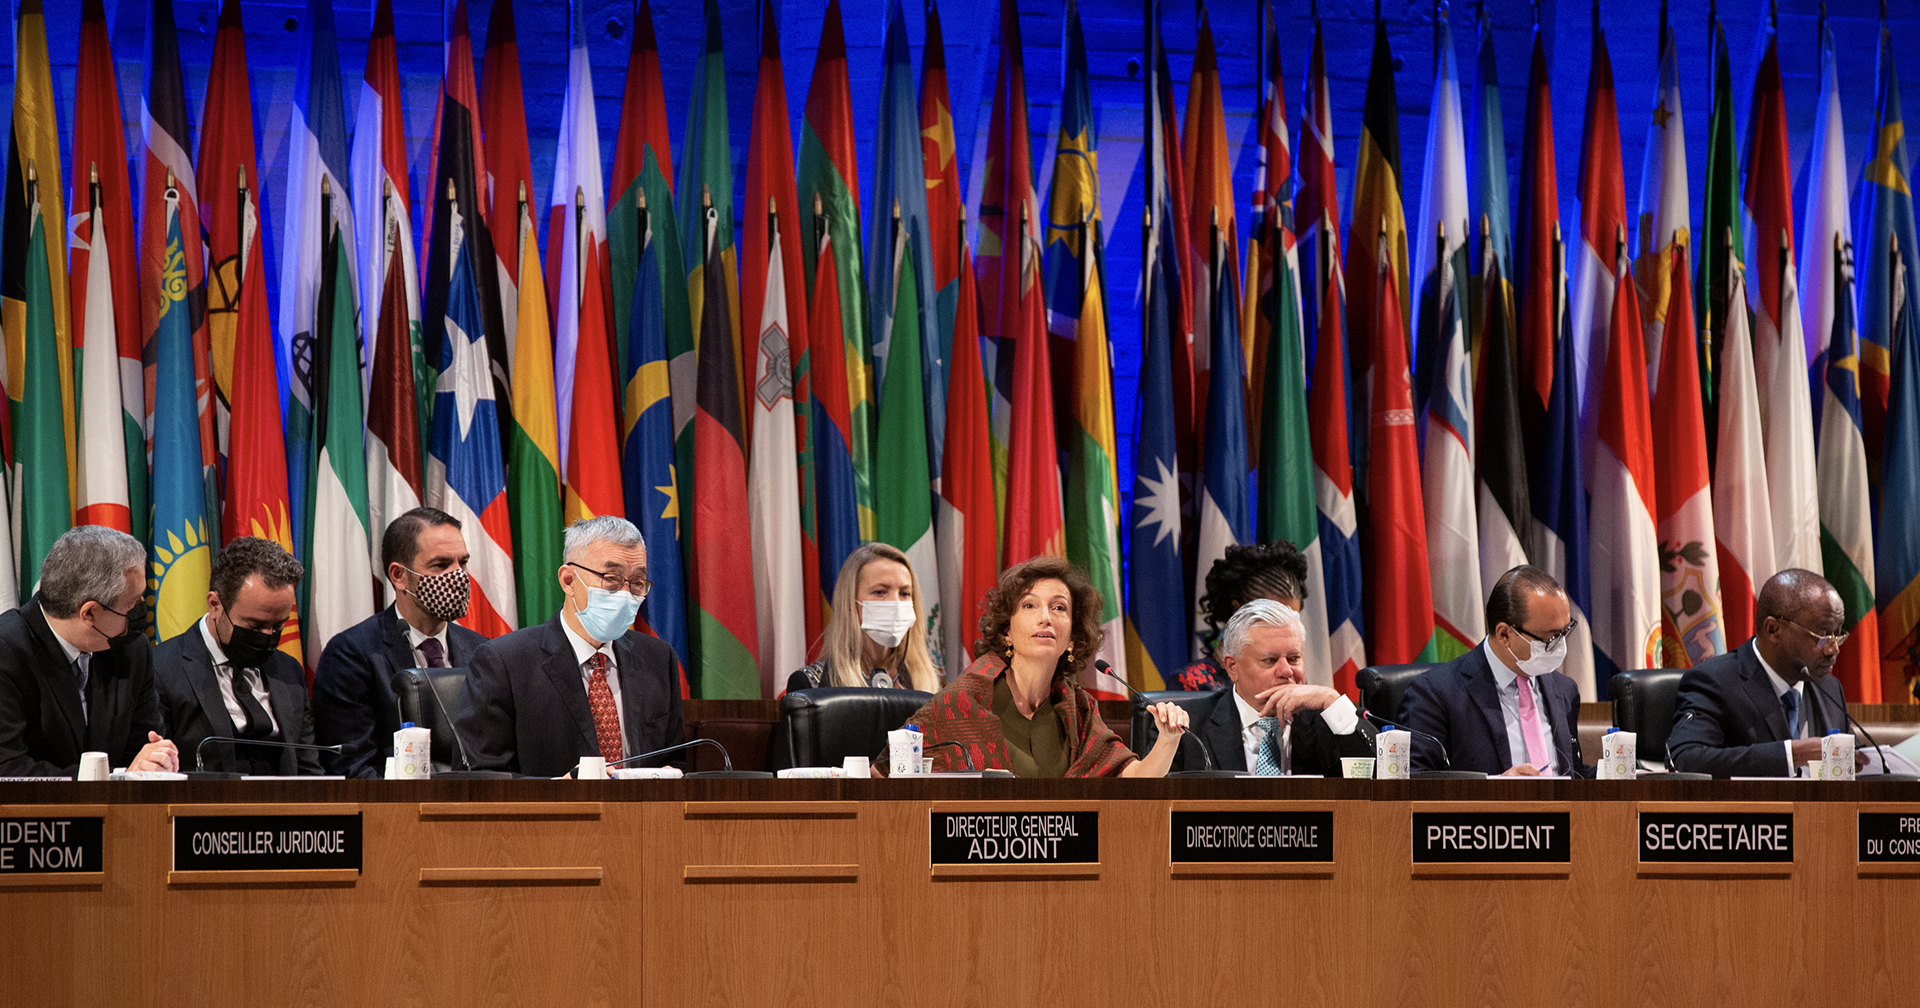 รายงานสดจากประชุม UNESCO: โซเชียลมีเดียคือ ‘เสรีภาพทางความคิด’ หรือ ‘แหล่งข่าวปลอม’